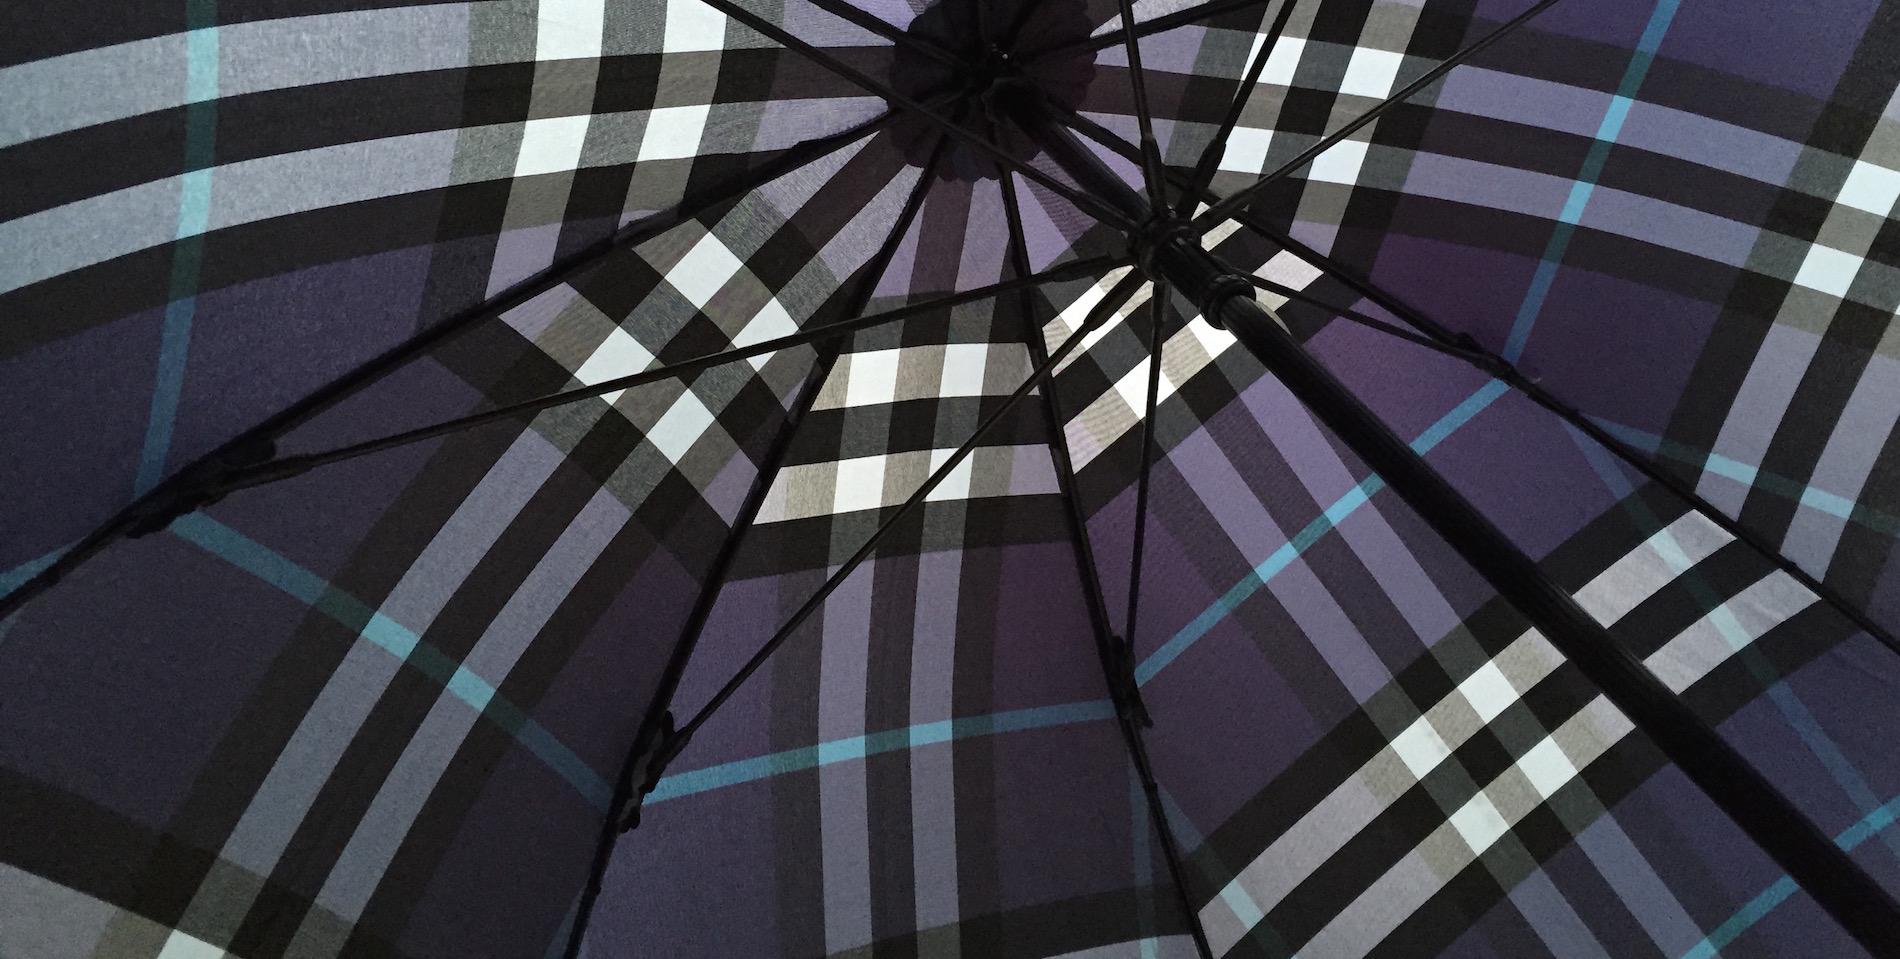 Happy Umbrella Day